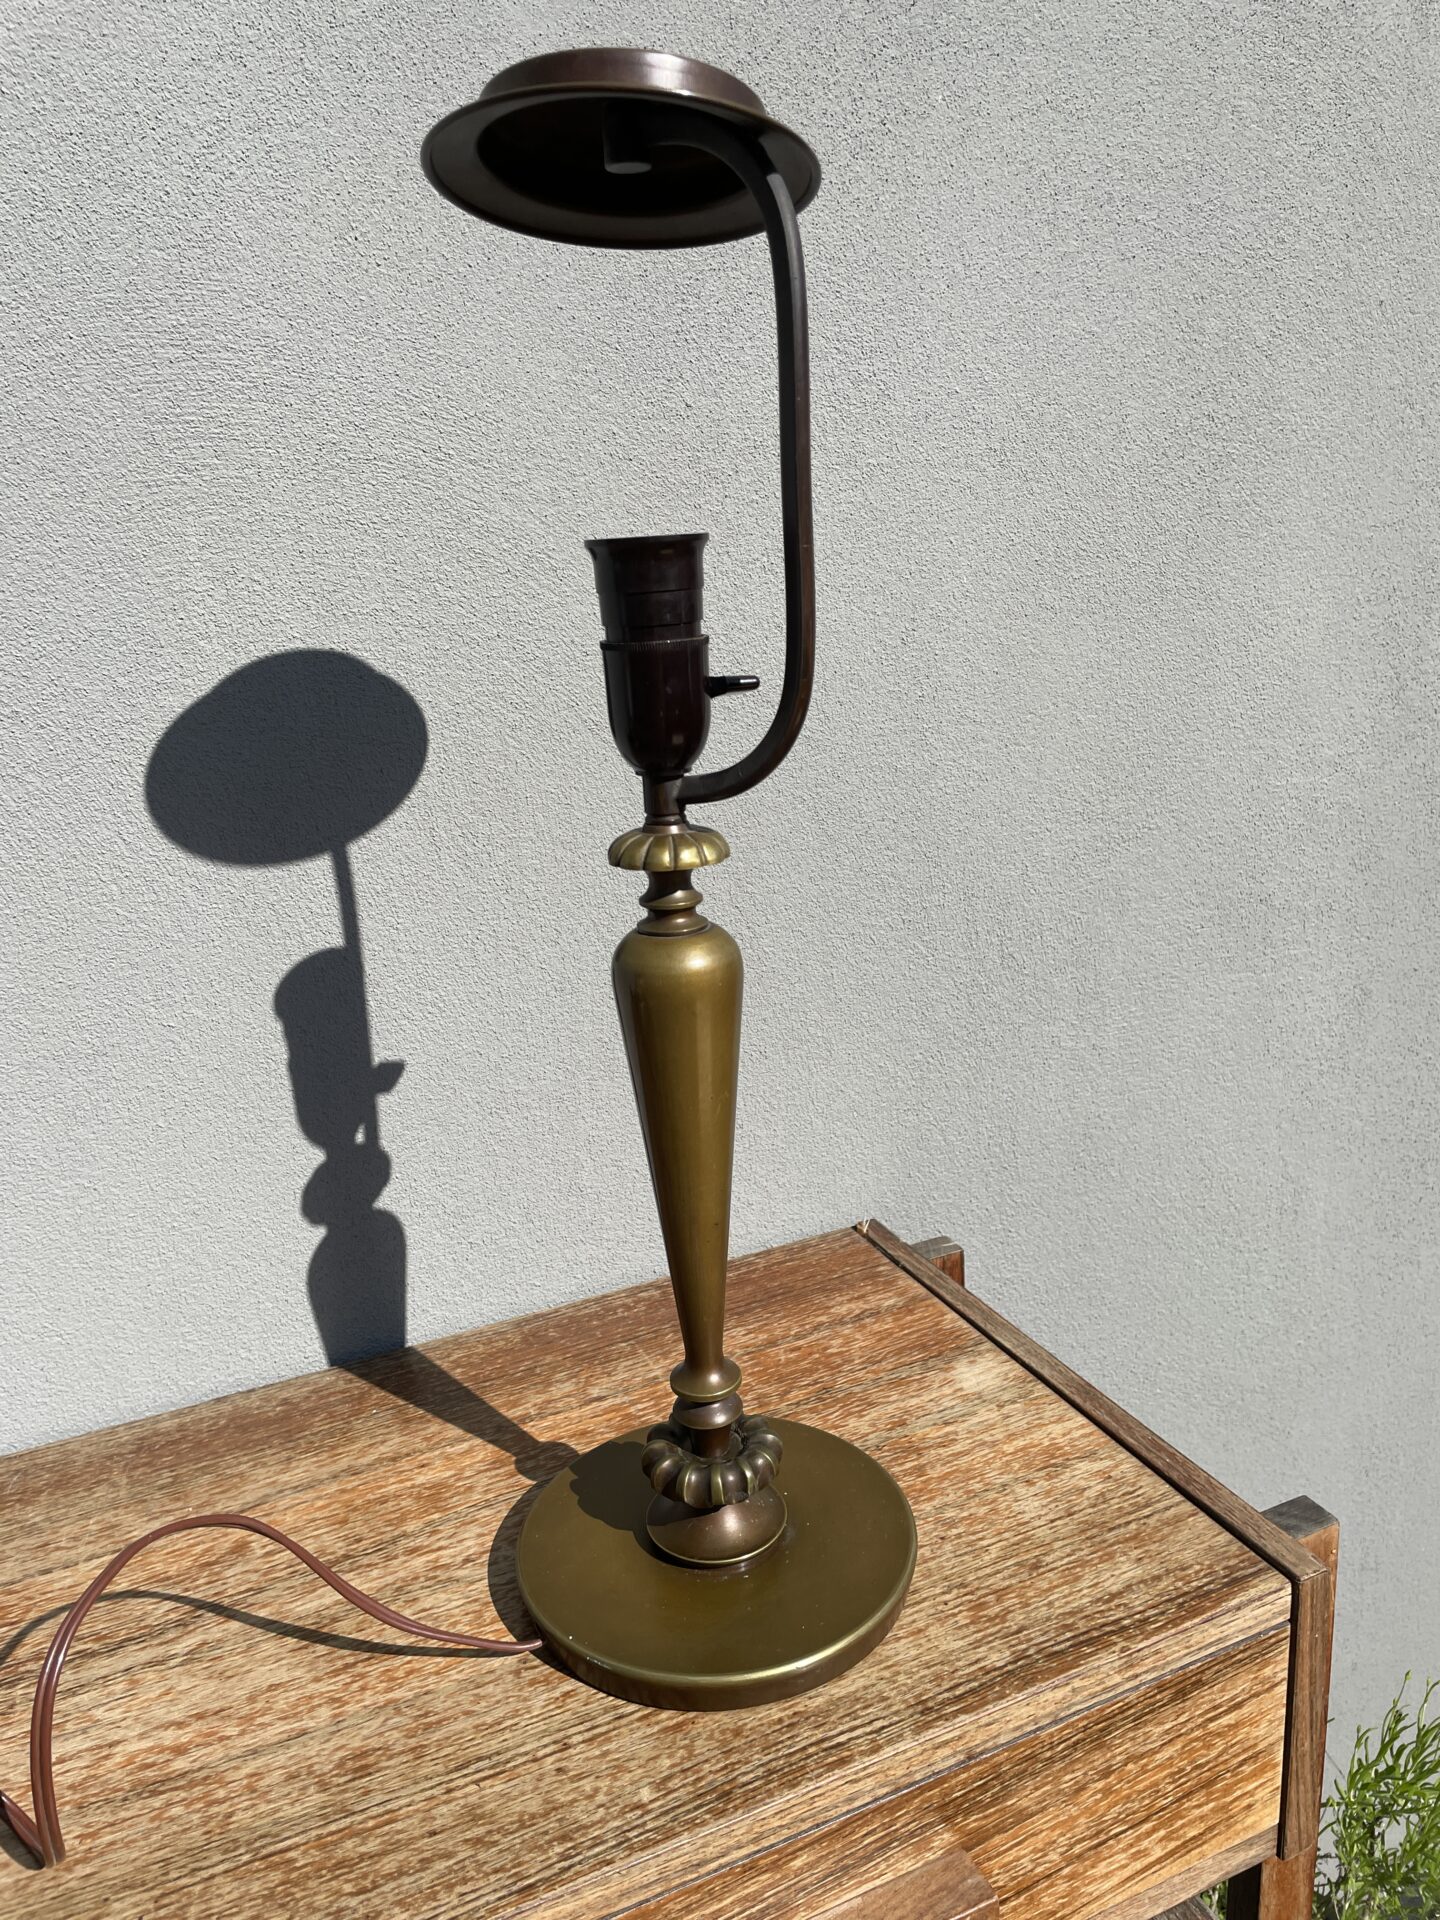 Skrivebordlame/bordlampe fra 30-erne, patineret bronze,h= 54 cm, pris 300kr